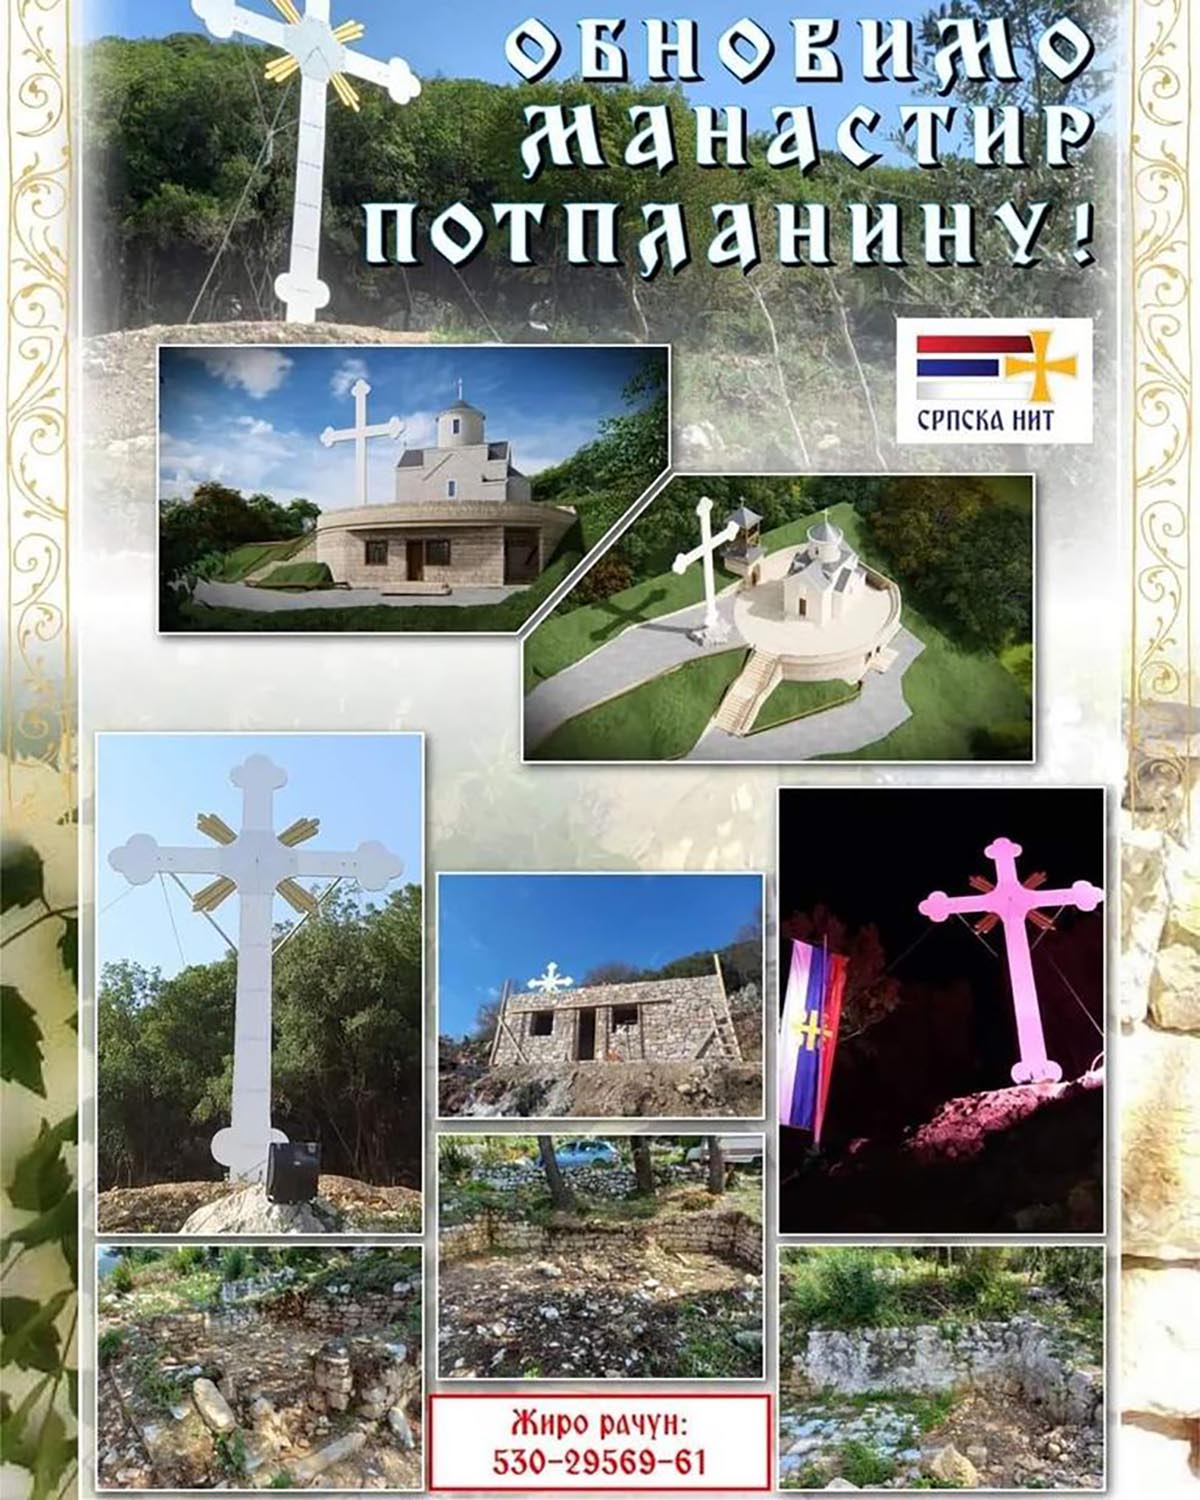 Обновимо манастир Потпланину, метох манастира Косијерево